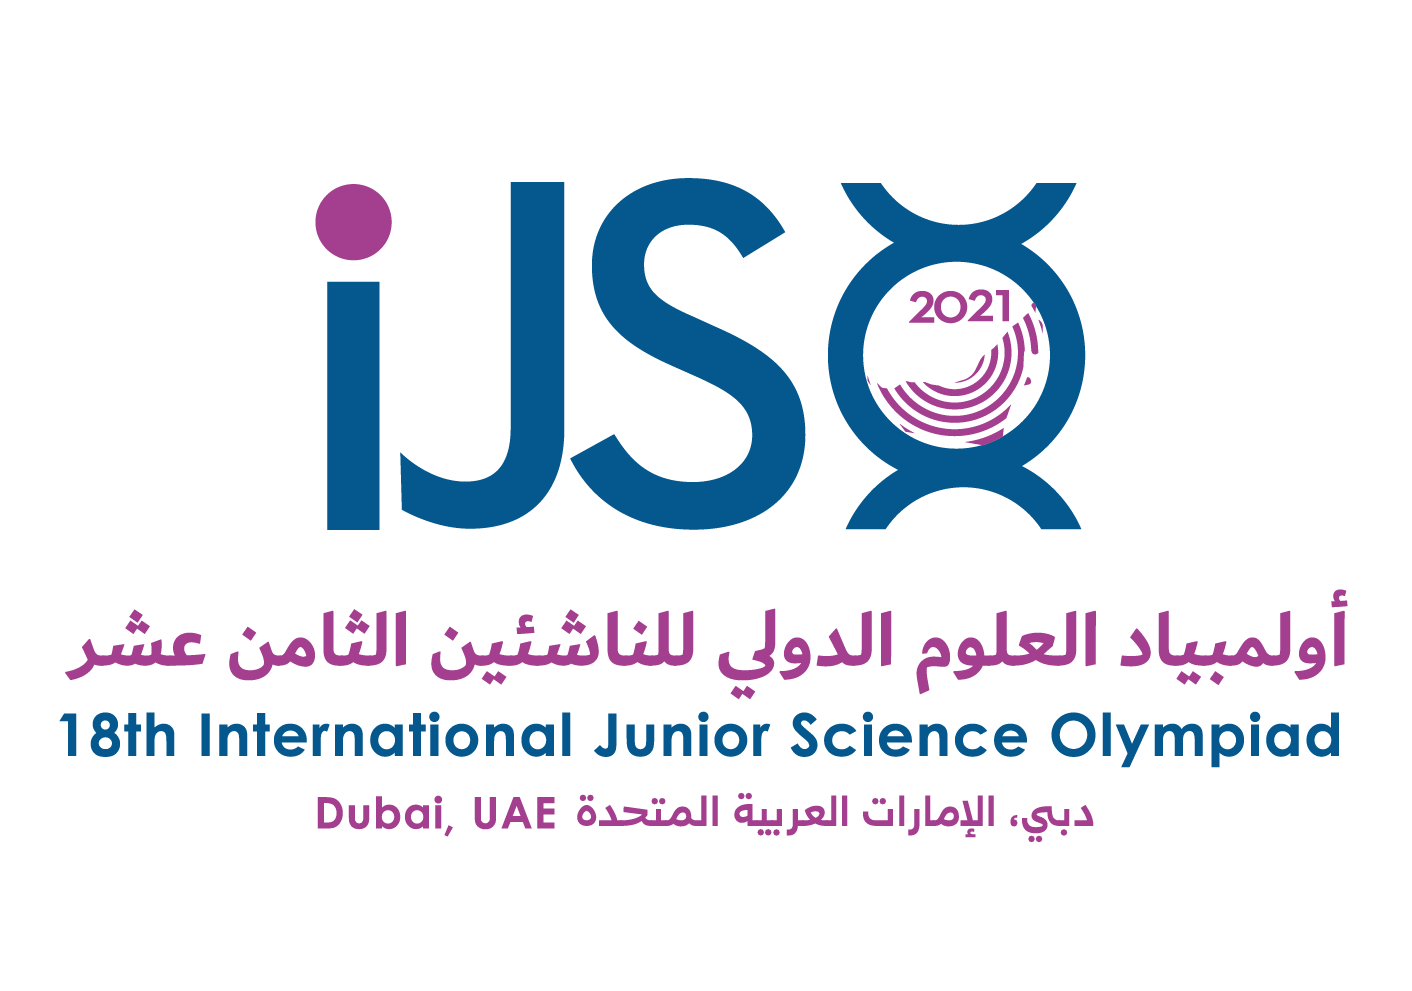 Das beste Laborteam der International Junior Science Olympiad kommt aus Deutschland